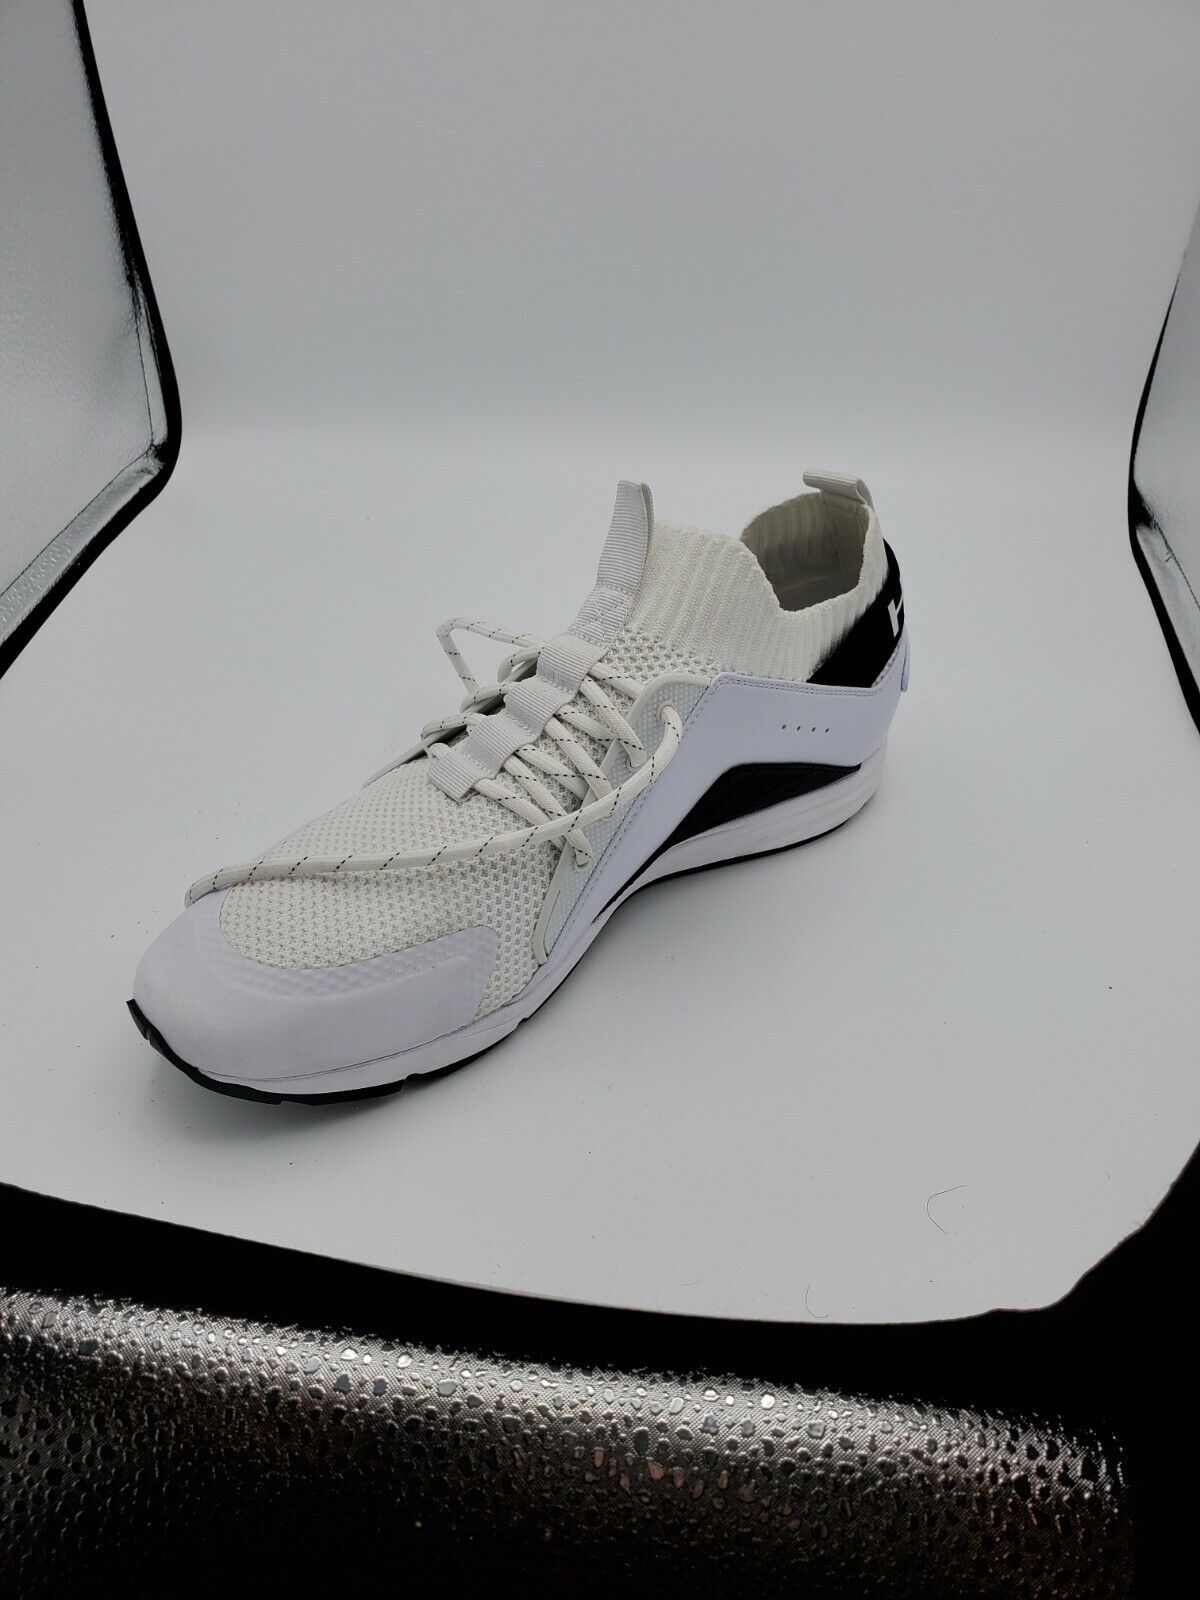 Hugo Boss Footwear Hybrid_Run Mesh/Nylon White Patterned Trainer SZ 11 - $197.01